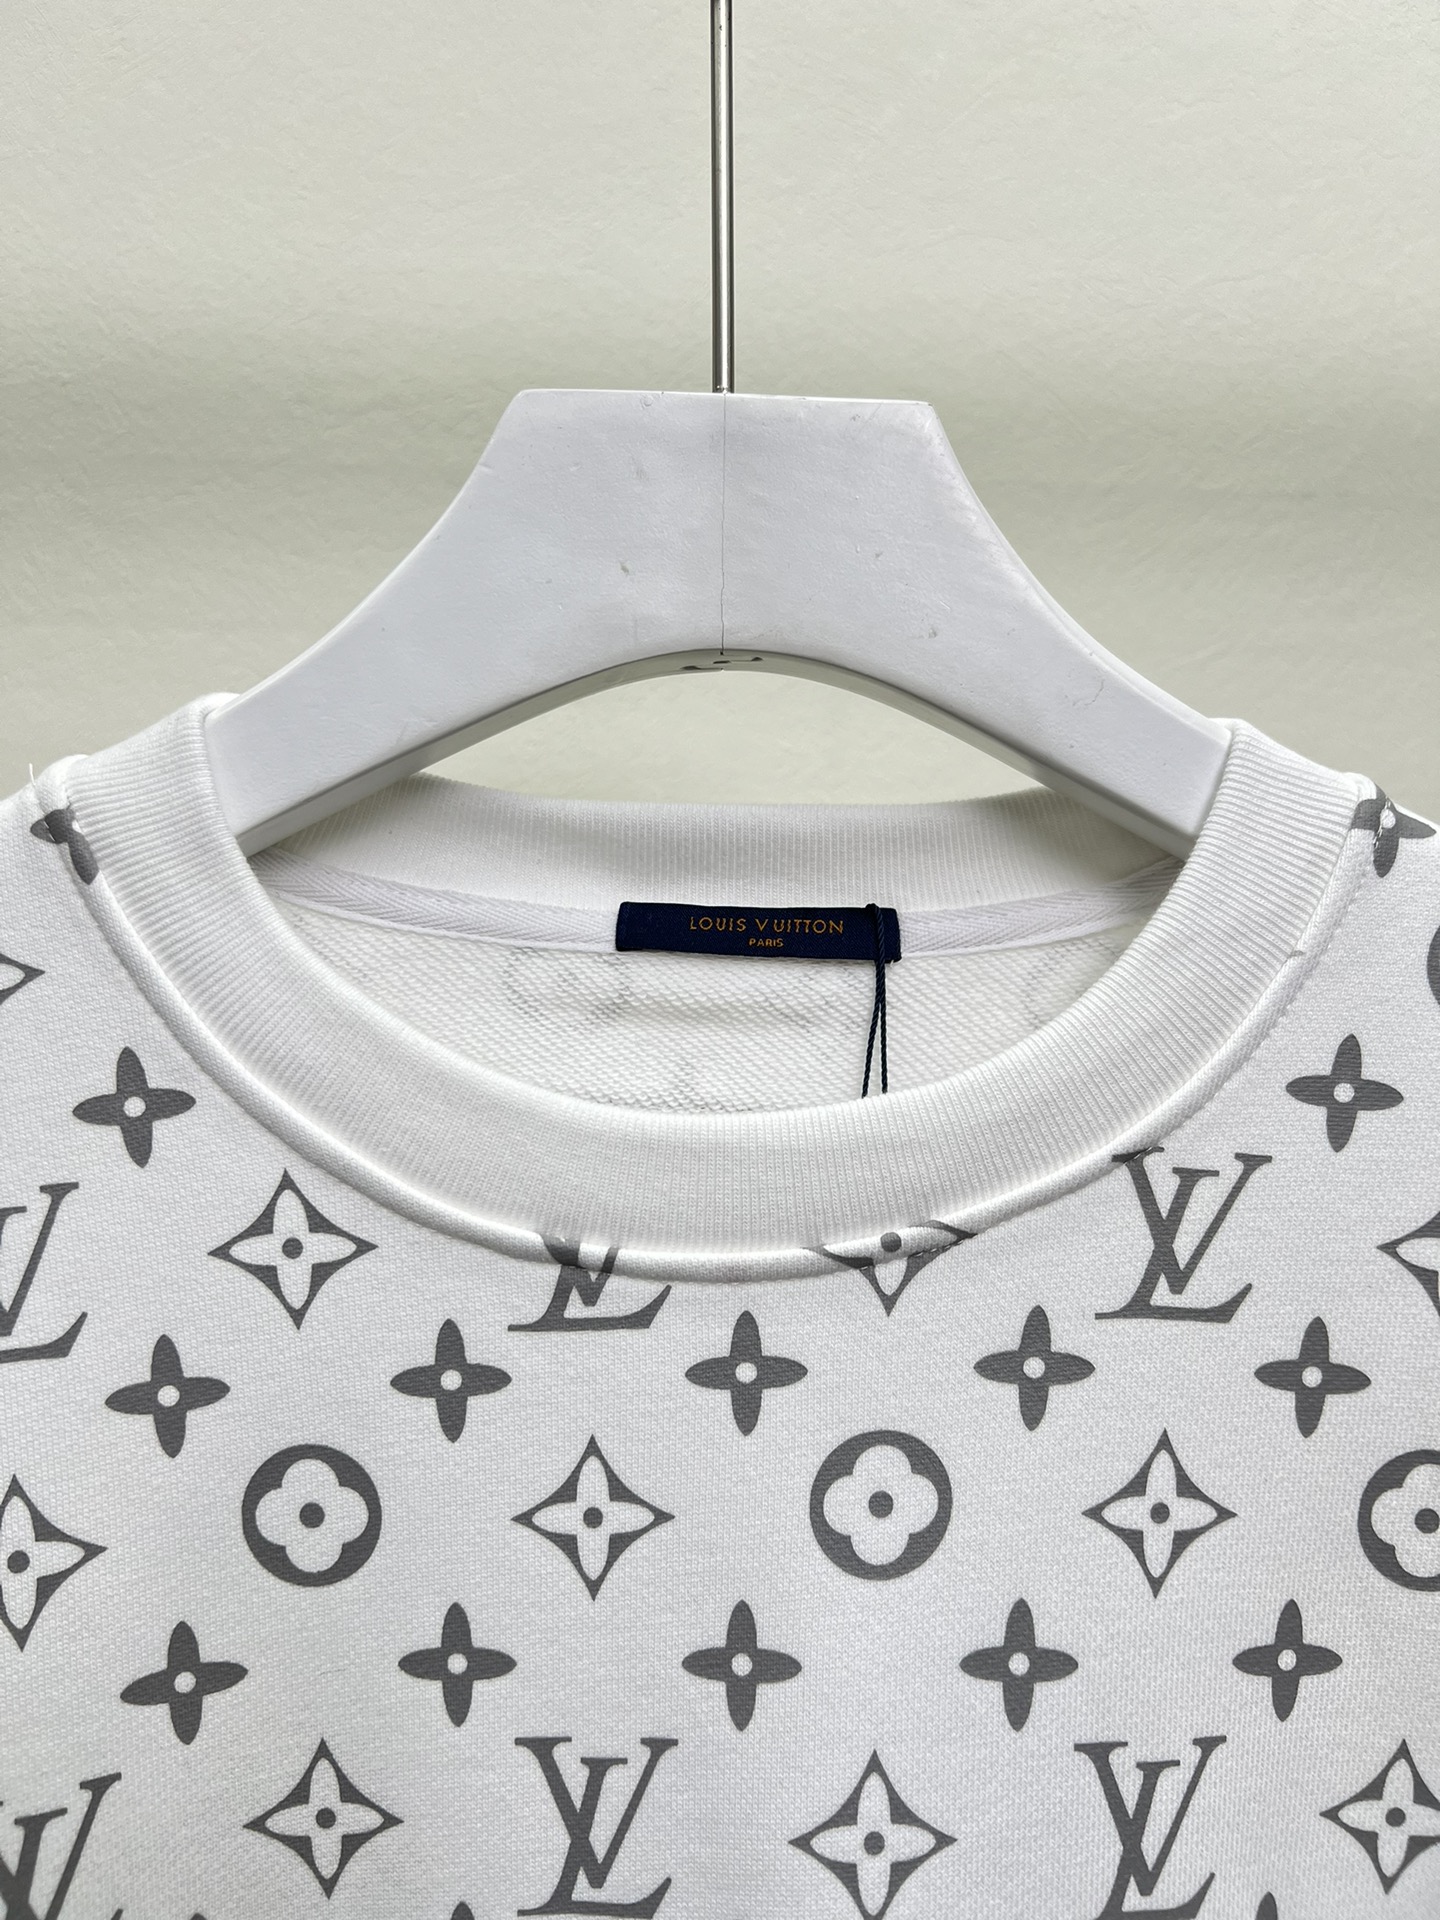 ルイヴィトンのtシャツ激安通販 セータートップス 暖かい シャツ ファッション ホワイト_4